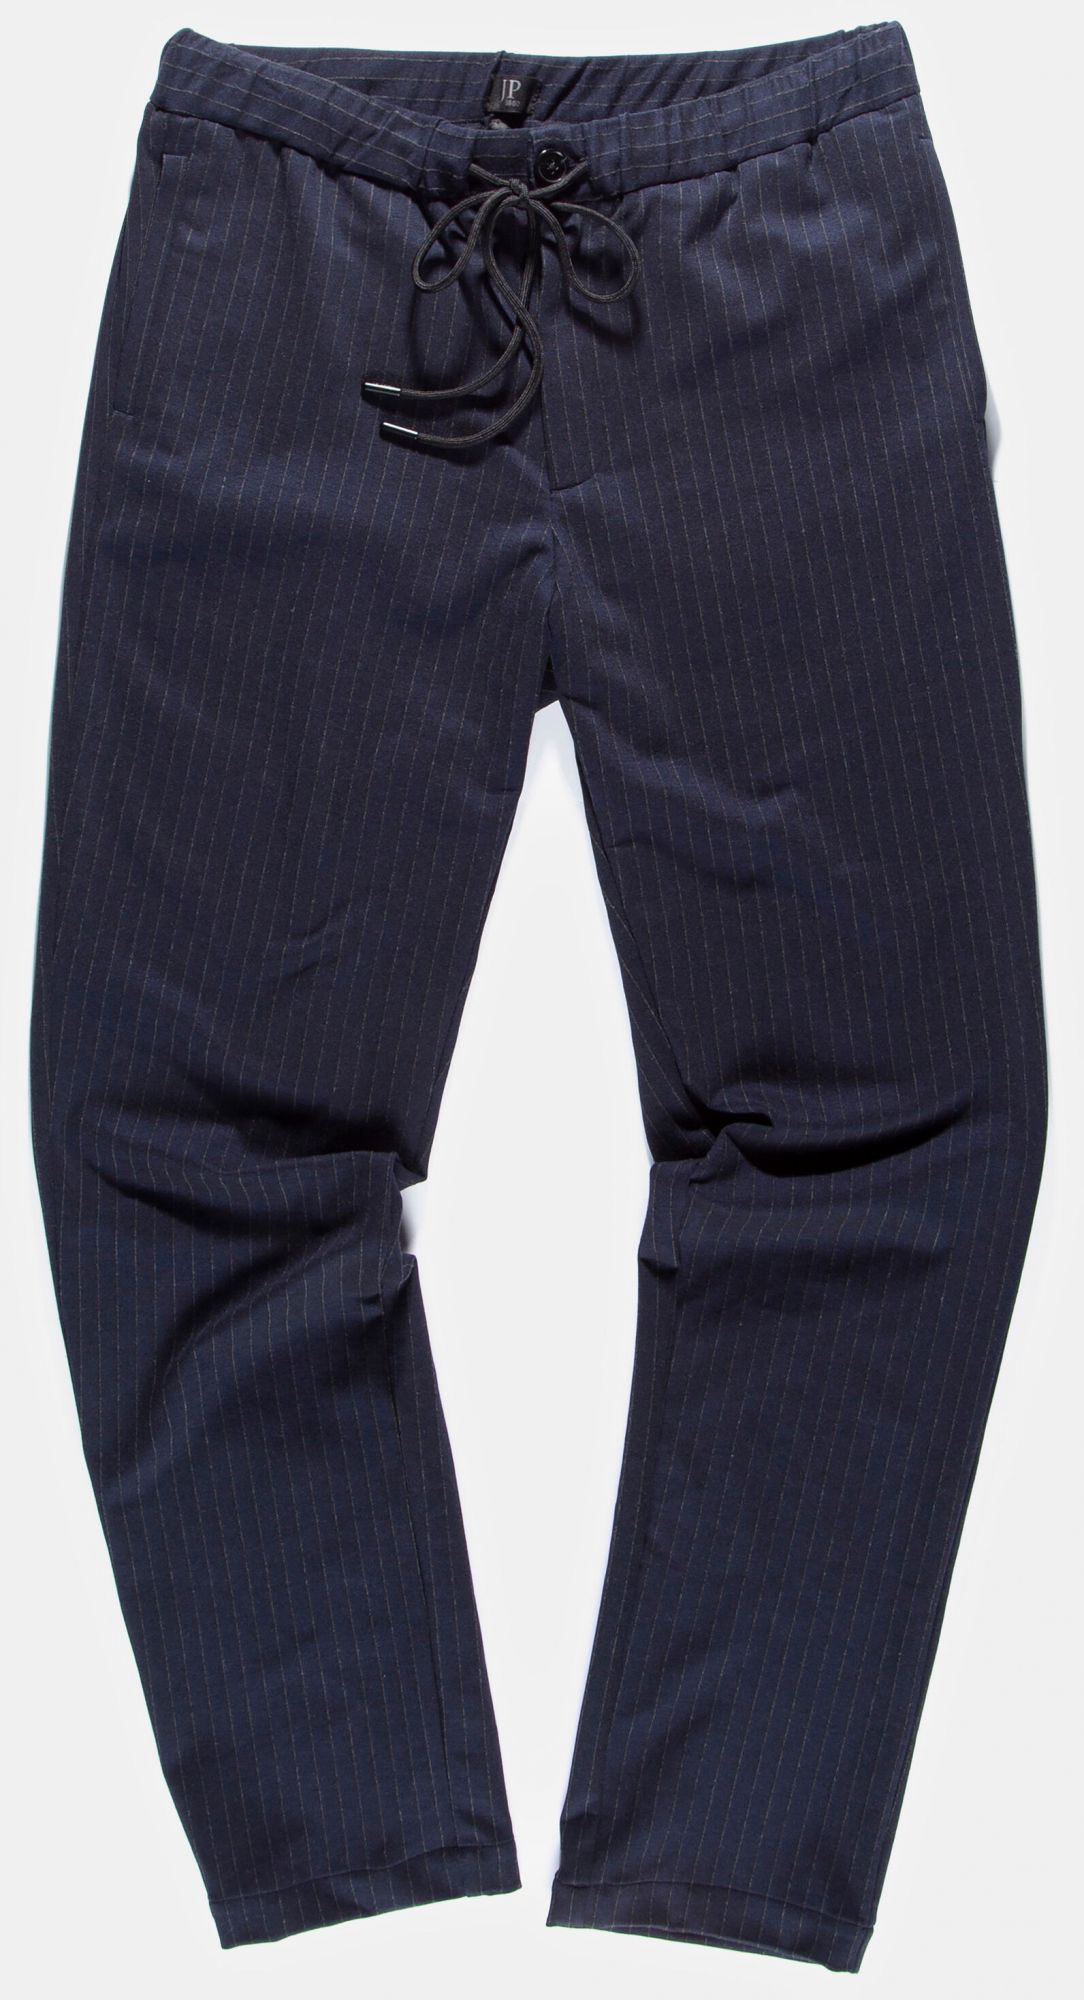 Pantalon SPORT extensible qualité premium bleu taille XL 48-50 - SP